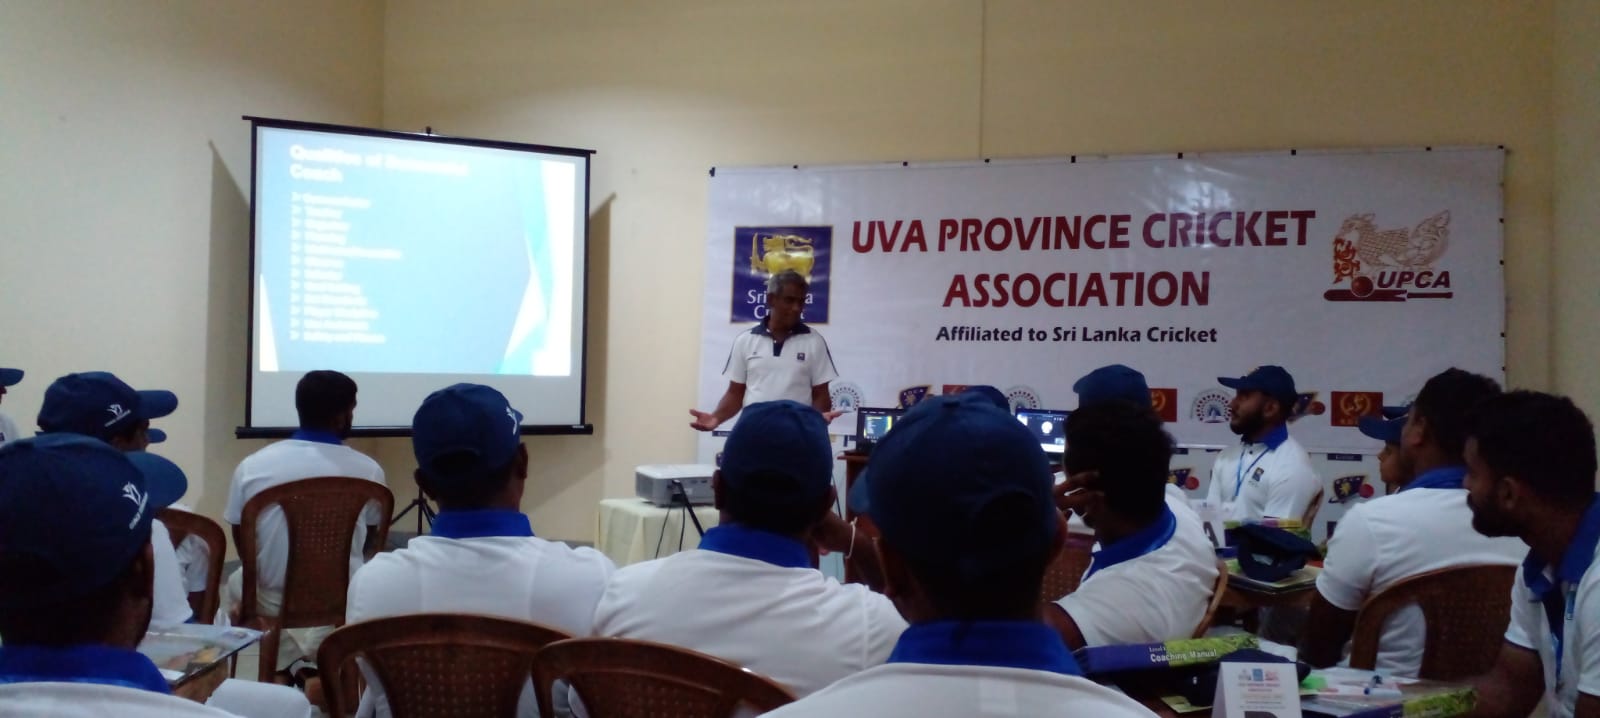 Day 1 of Uva Province Level 1 Coaching Course Commenced at Badulla Cricket Stadium